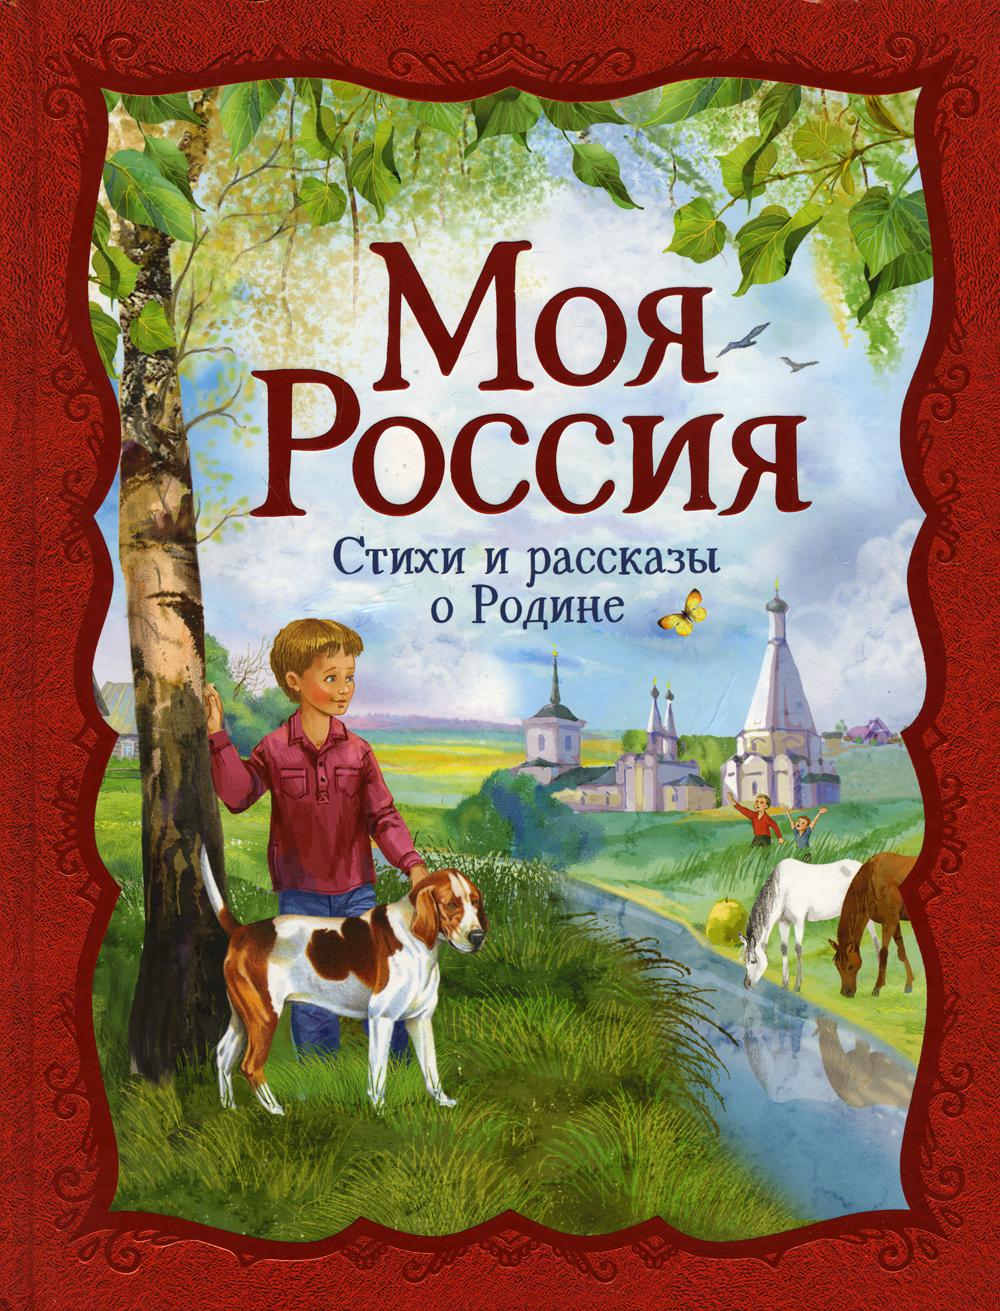 Моя Россия: стихи и рассказы о Родине